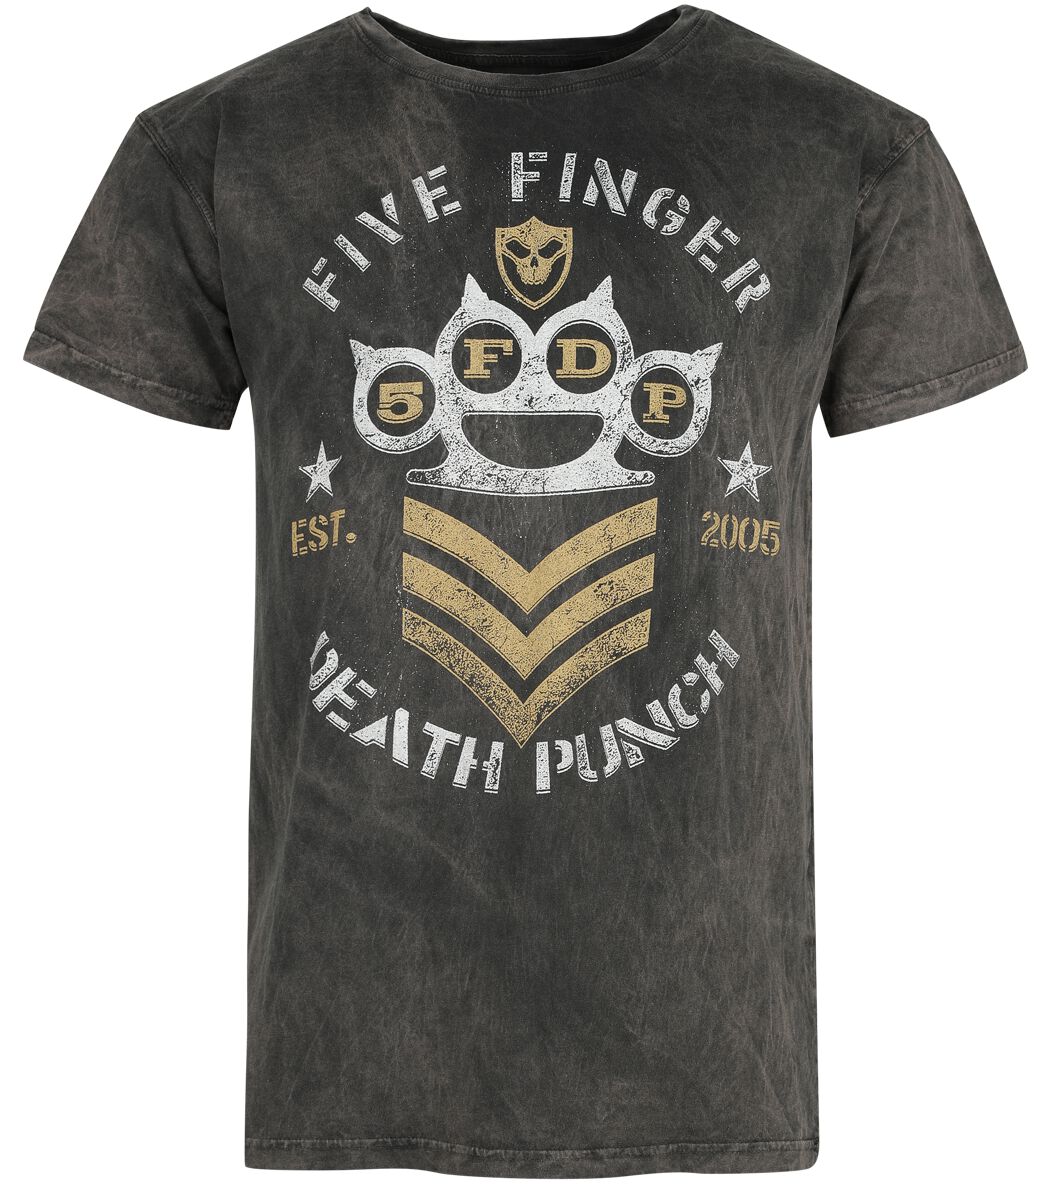 Five Finger Death Punch T-Shirt - Brass Knuckles - M - für Männer - Größe M - grau  - Lizenziertes Merchandise!